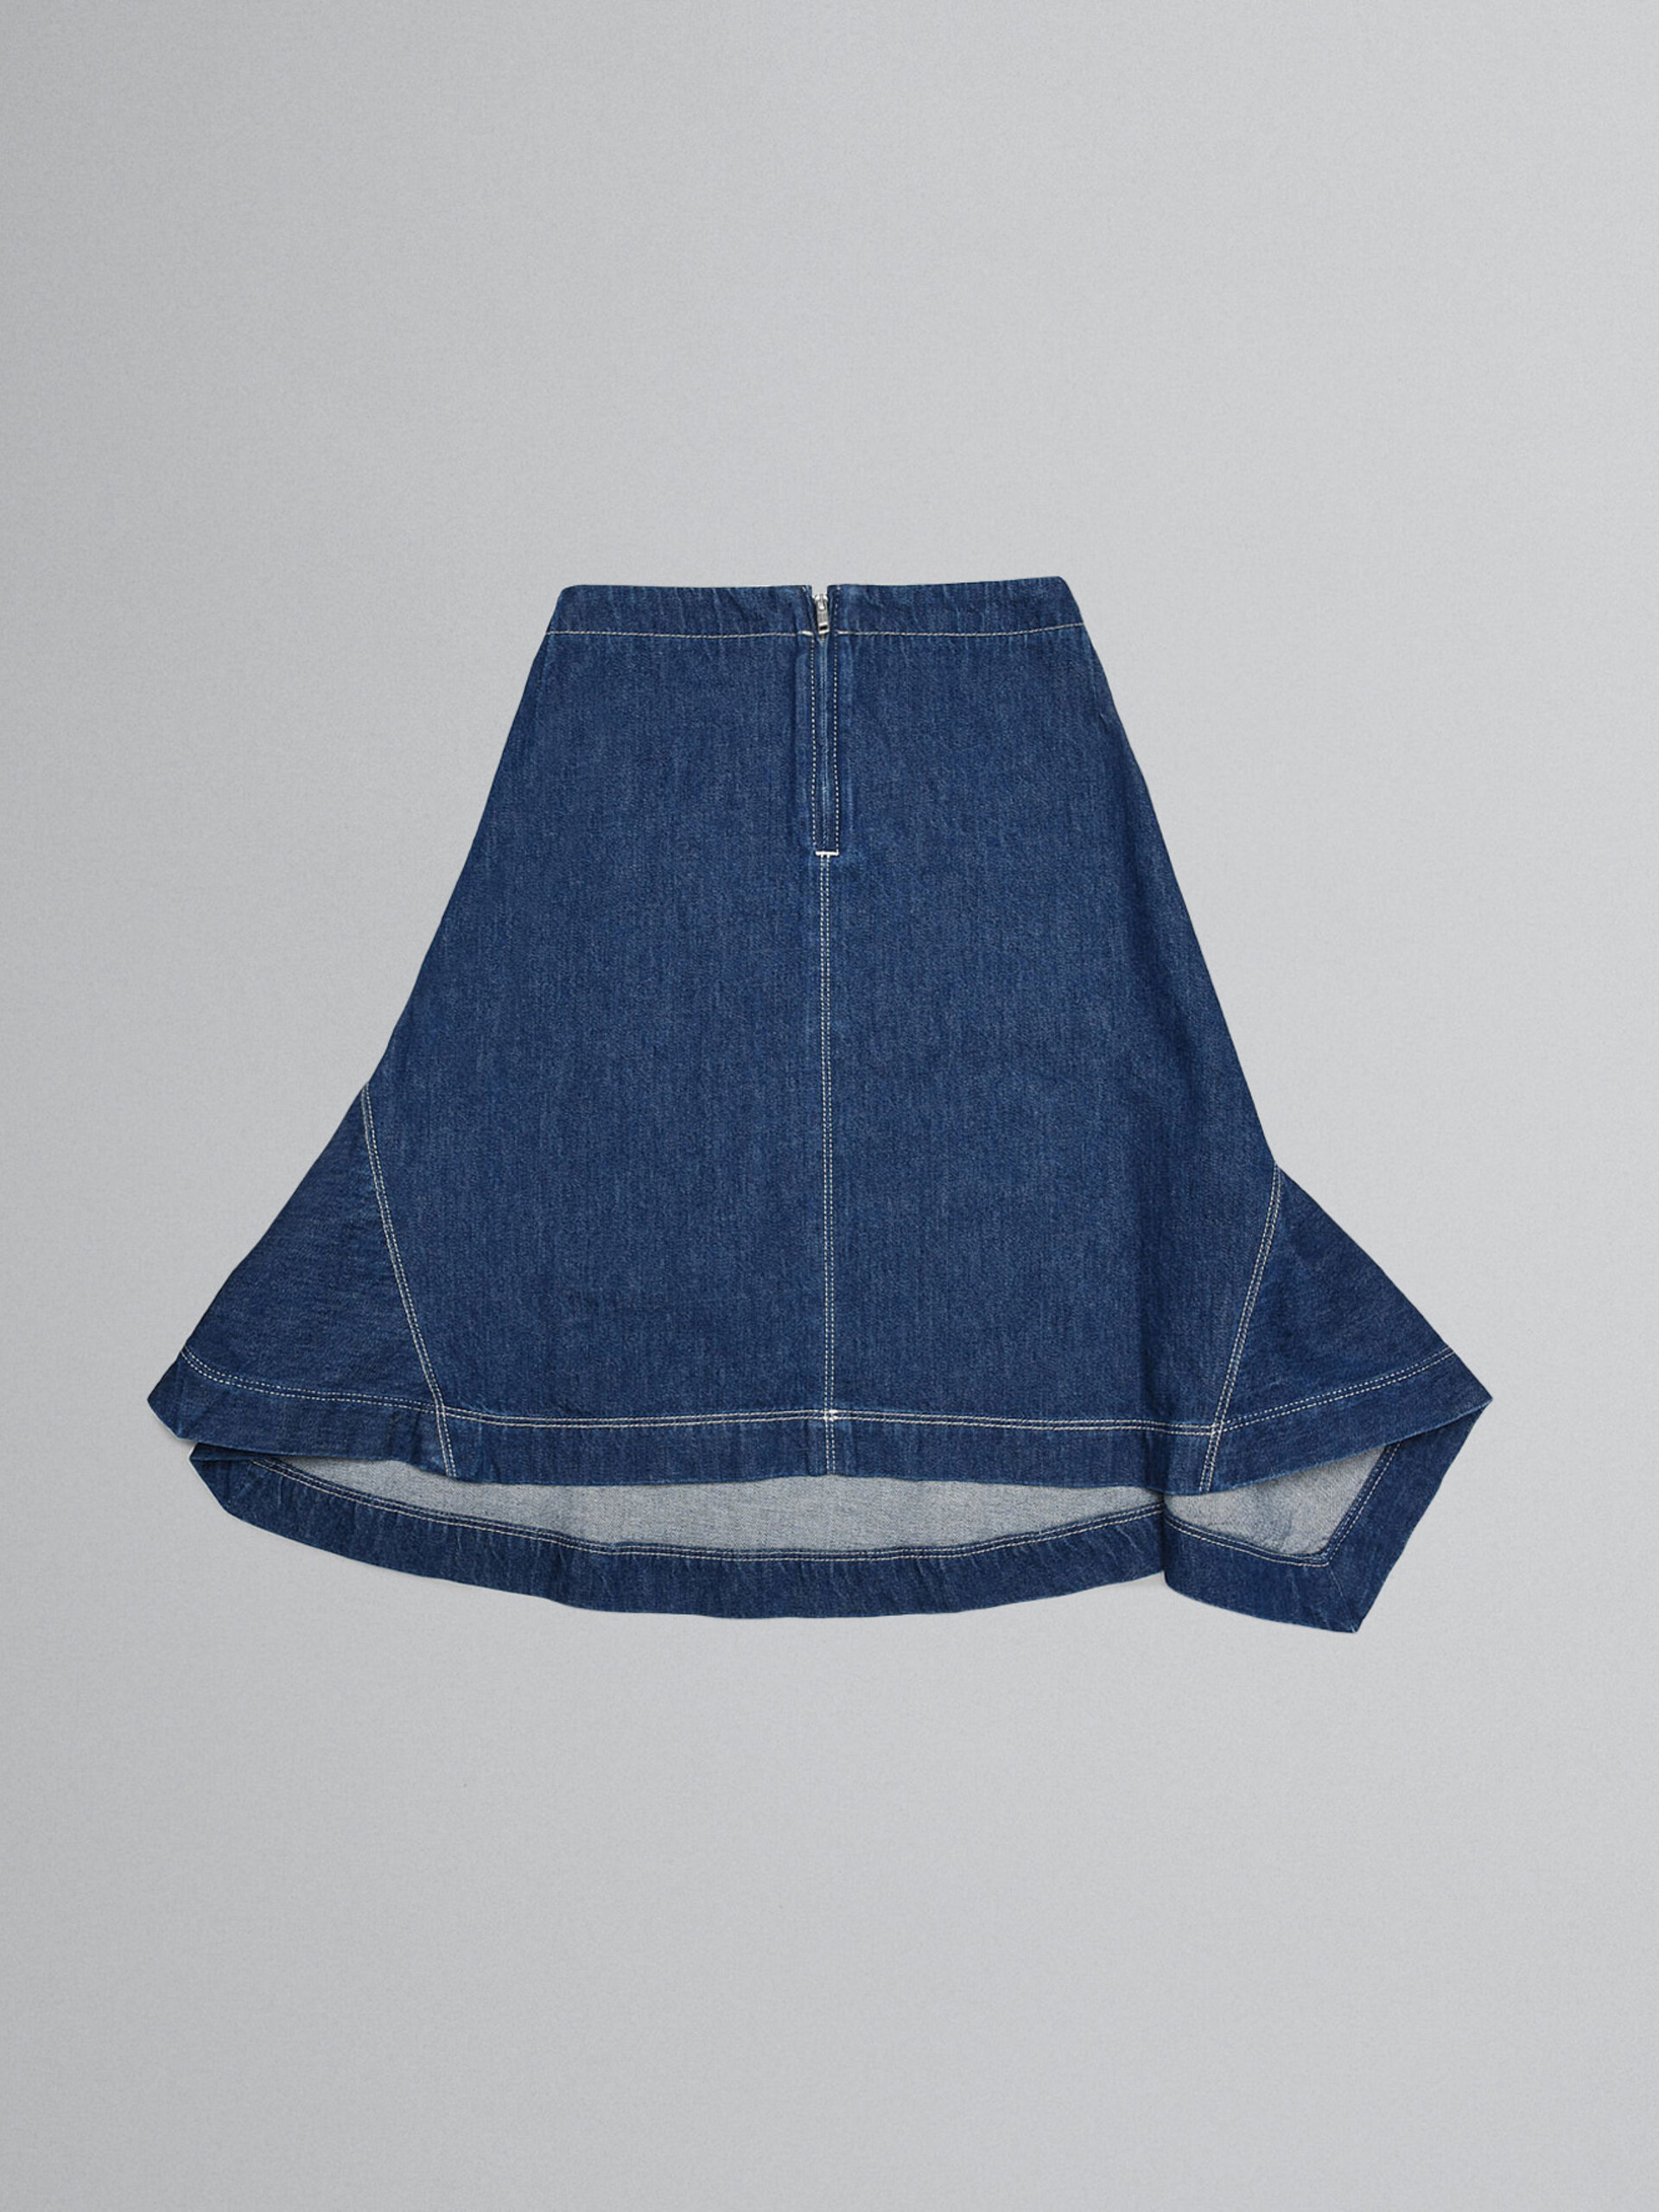 Denim handkerchief skirt - Skirts - Image 2